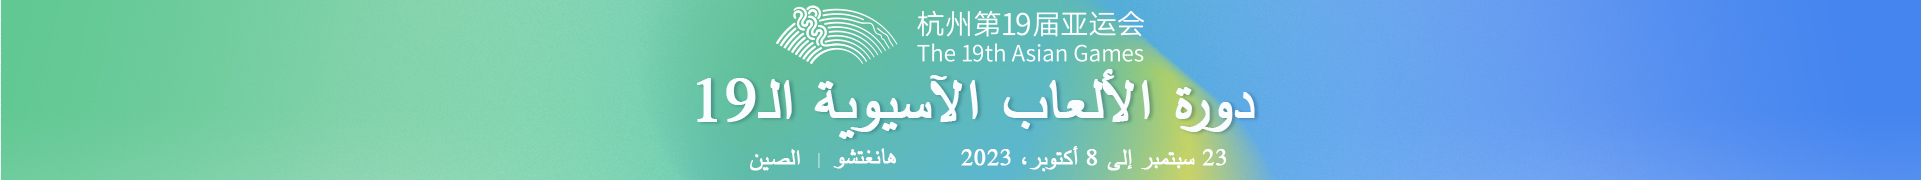 دورة الألعاب الآسيوية الـ19